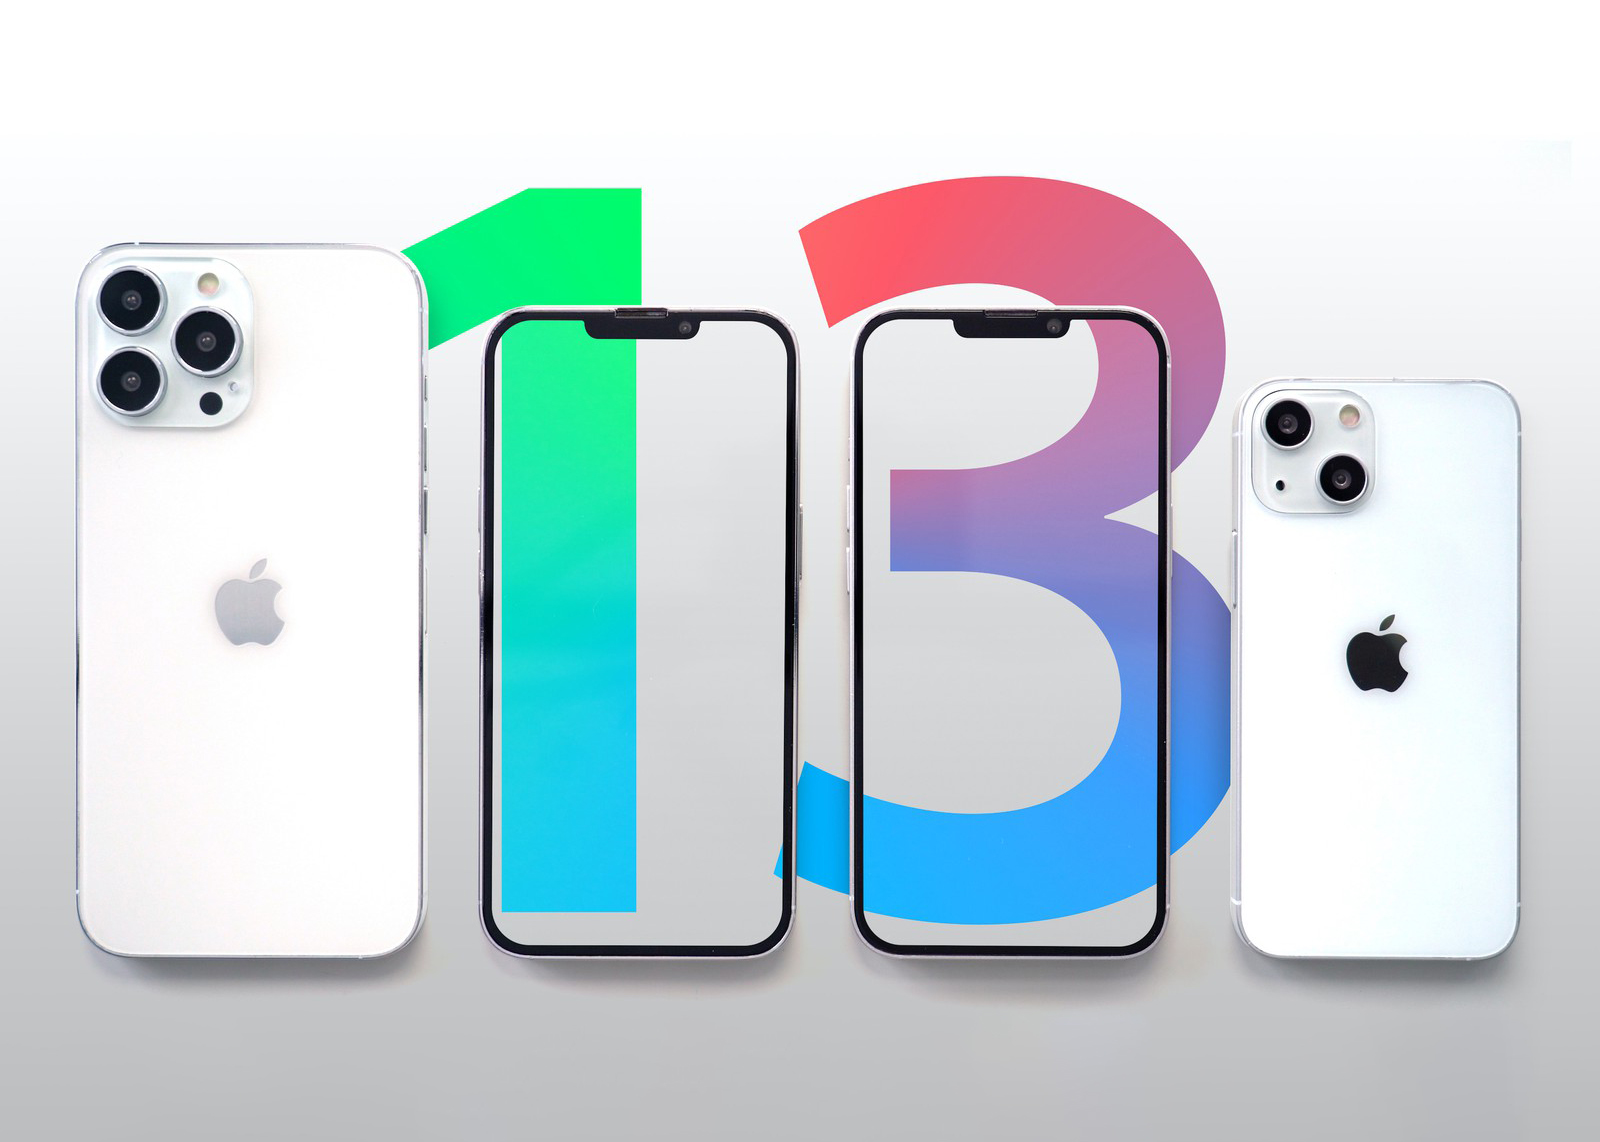 Bật mí về giá bán, cấu hình và tất tần tận về 4 mẫu iPhone 13 ra mắt ngày 14/9